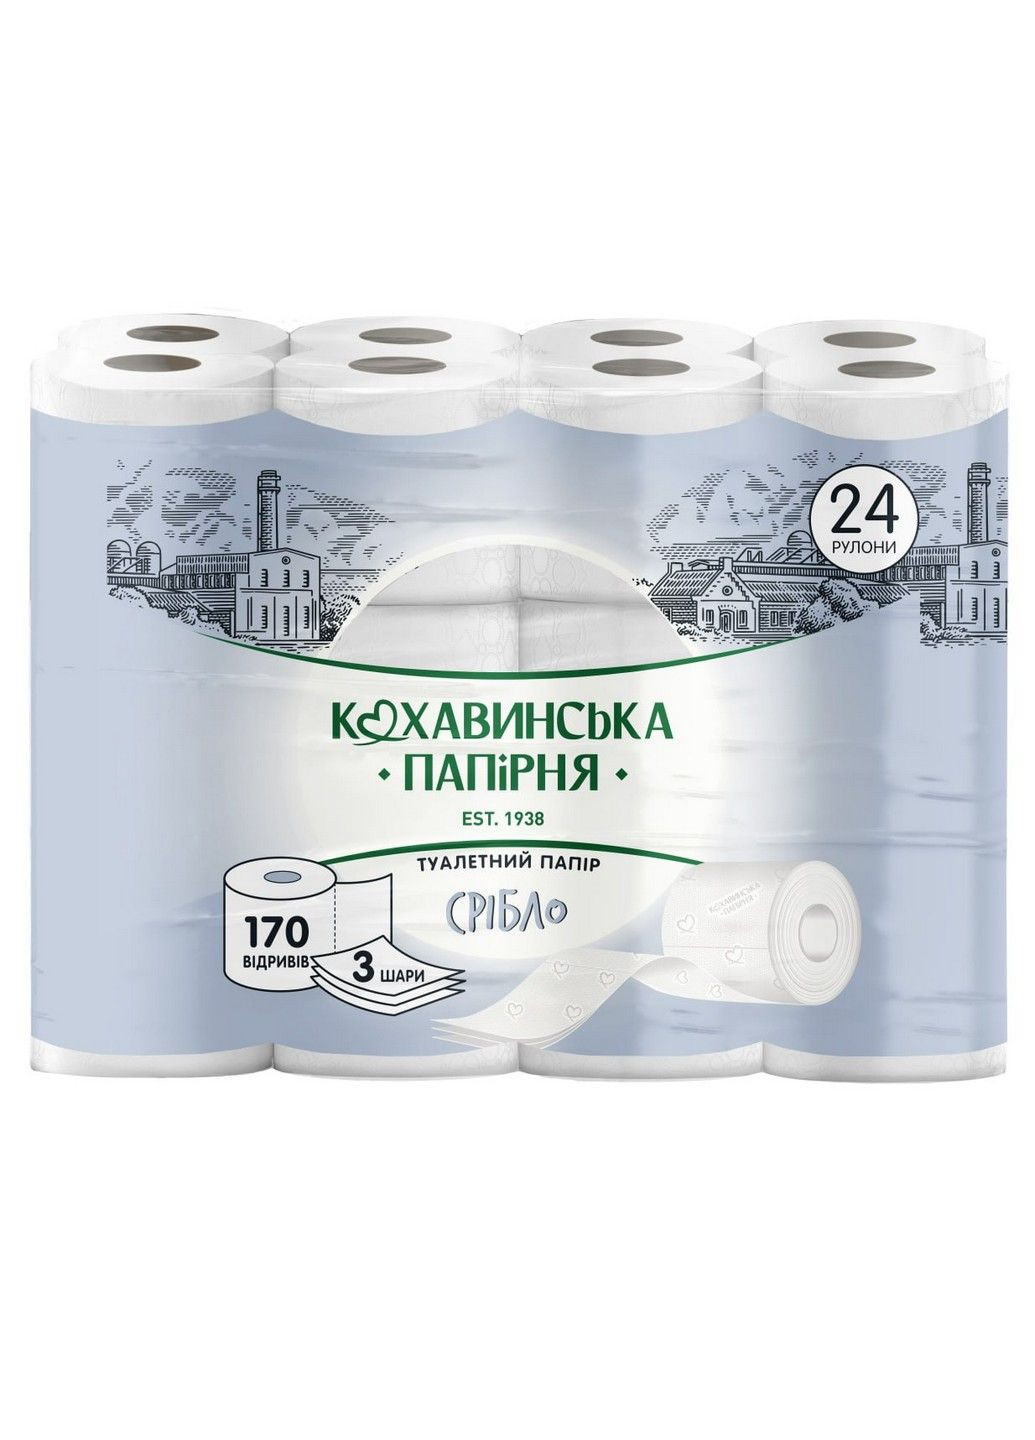 Папір туалетний "Срібло" 3 шари 24 штуки 170 відривів Кохавинська папірня (294094877)